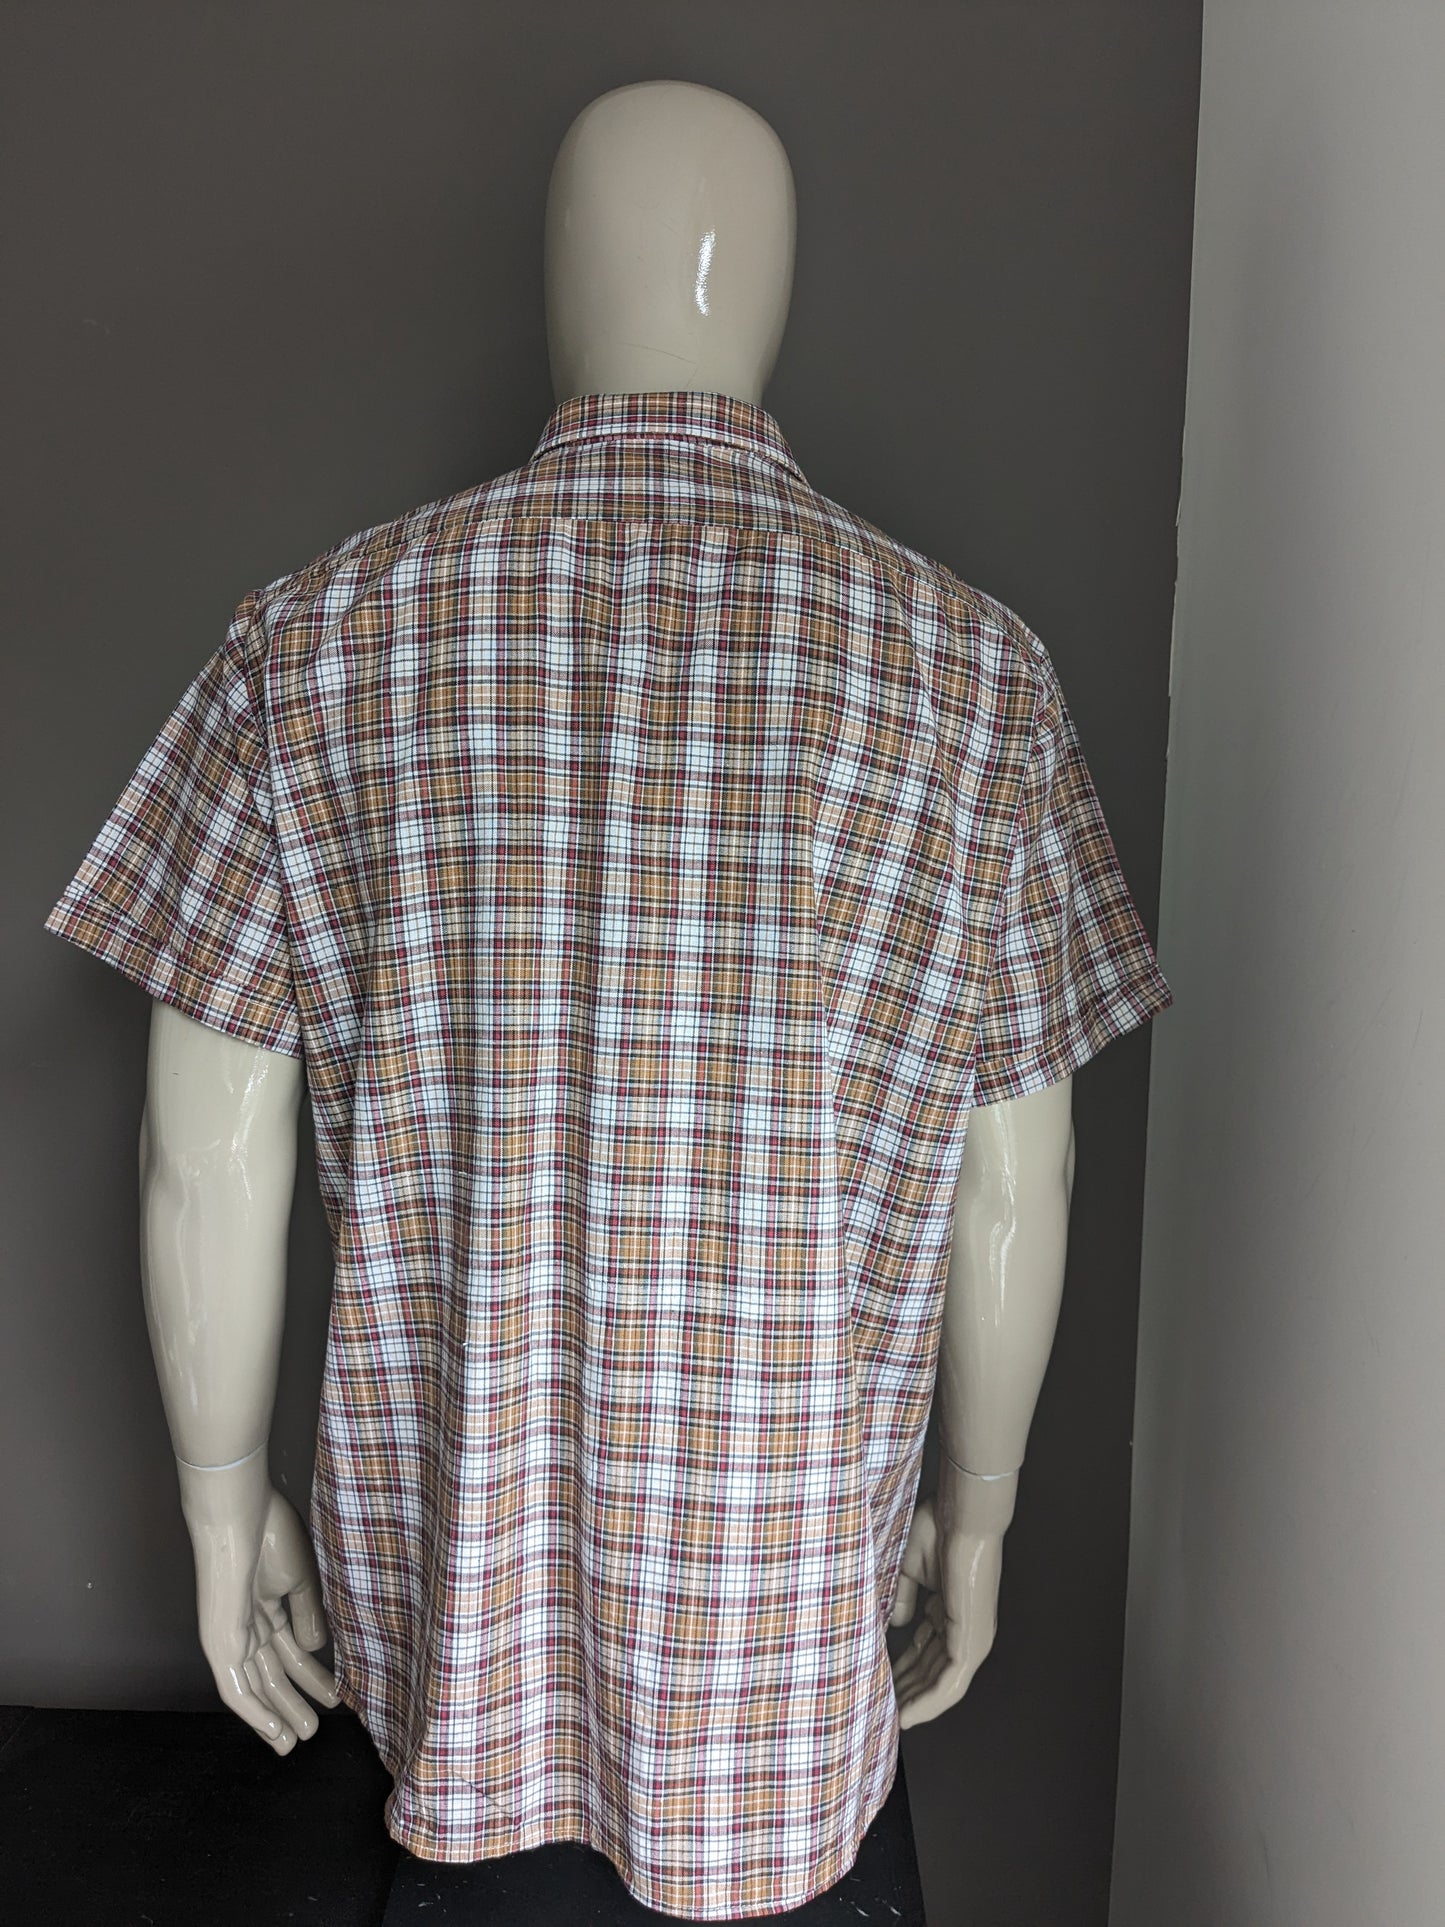 Shelt de chemise vintage des années 70 à manches courtes. Rouge vert brun vérifié. Taille xxl / 2xl.